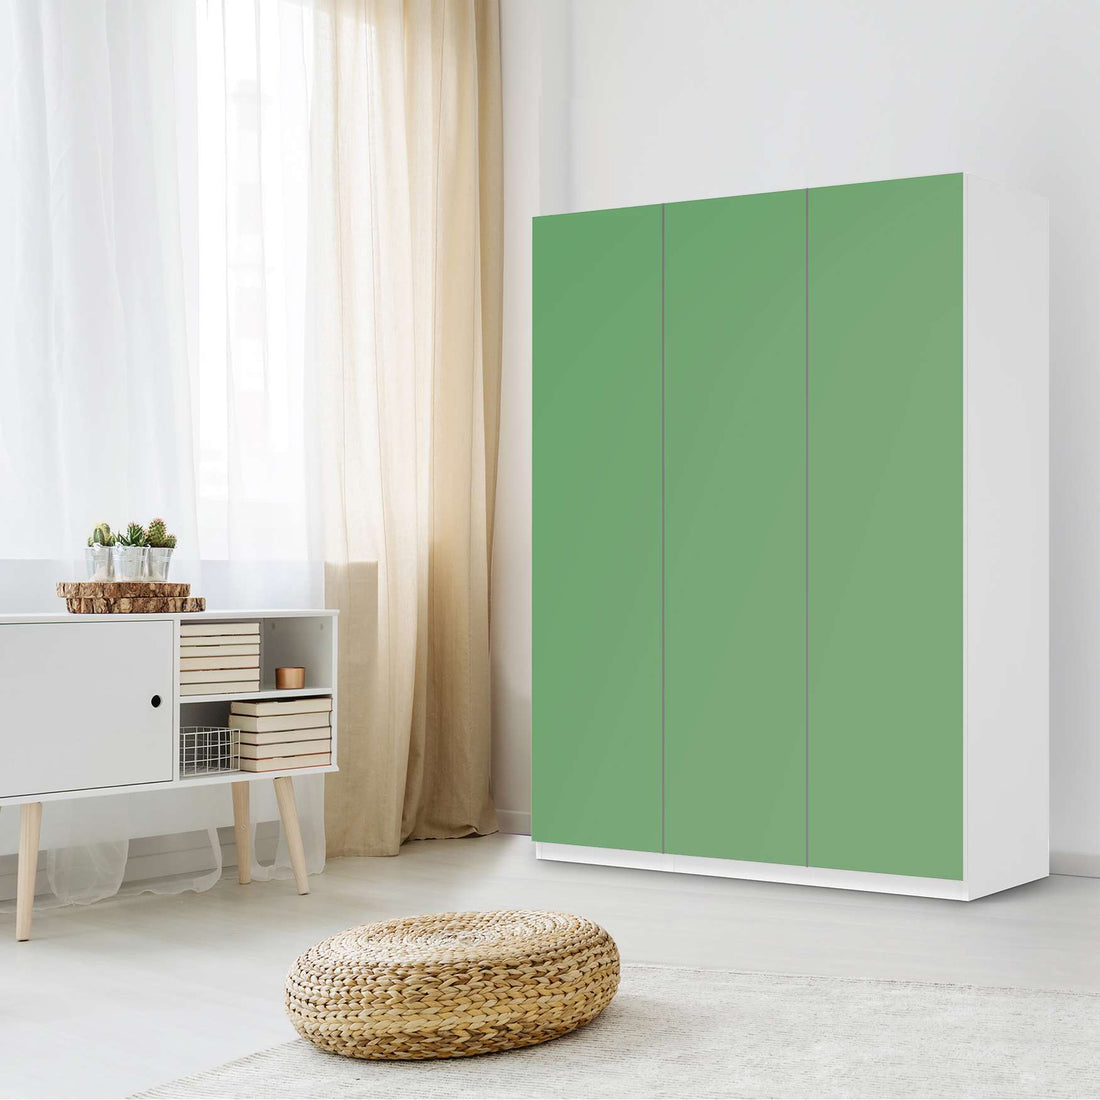 Folie für Möbel Grün Light - IKEA Pax Schrank 201 cm Höhe - 3 Türen - Schlafzimmer